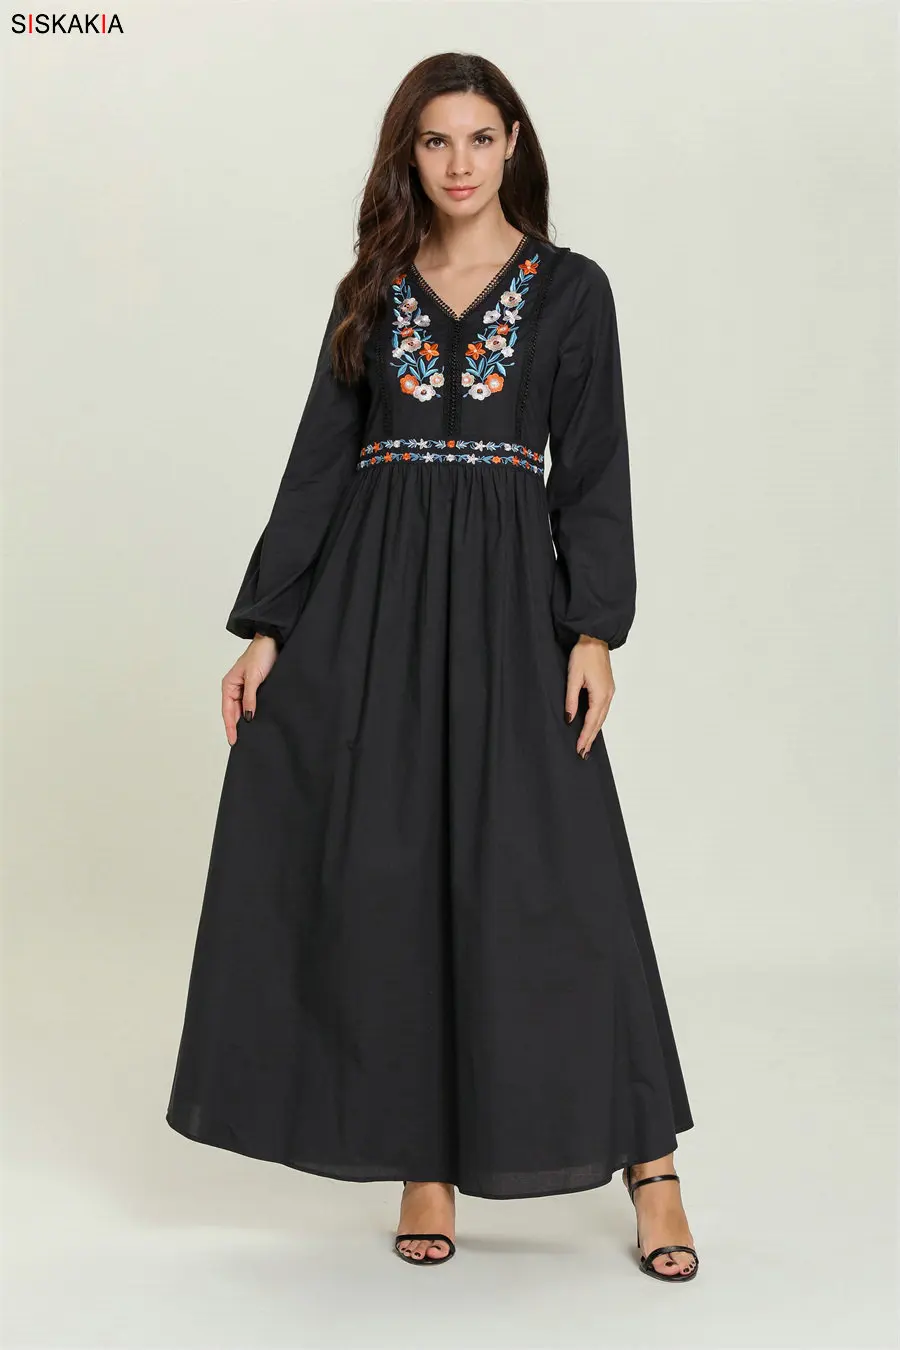 Siskakia повседневное мусульманское длинное платье в этническом стиле с v-образным вырезом и длинным рукавом, Цветочная вышивка, макси платья черного цвета, большие размеры, Арабская одежда